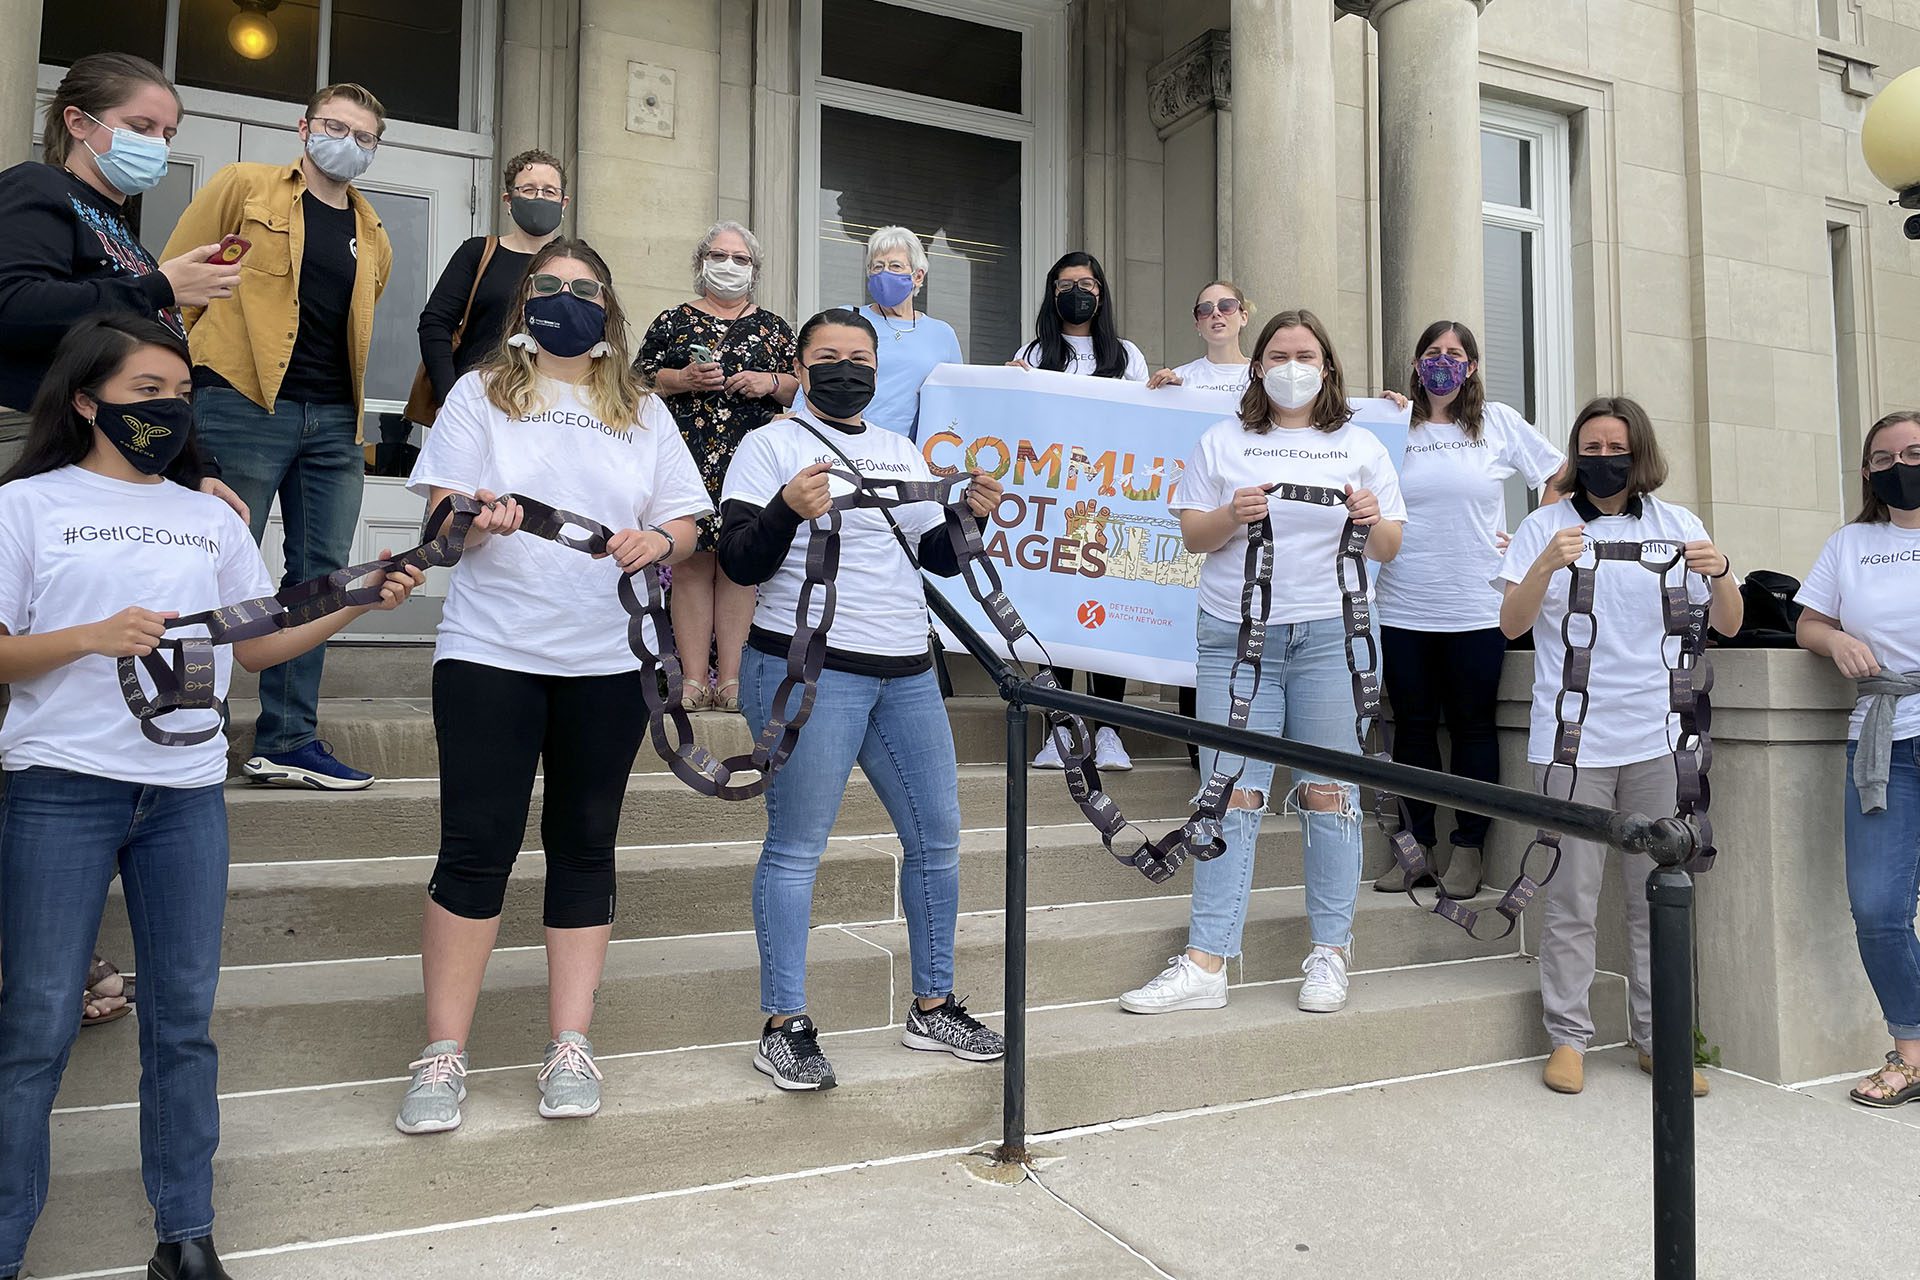 Des membres de la coalition "Communities Not Cages Indiana" devant le palais de justice du comté de Clay, brisant une chaîne symbolique.